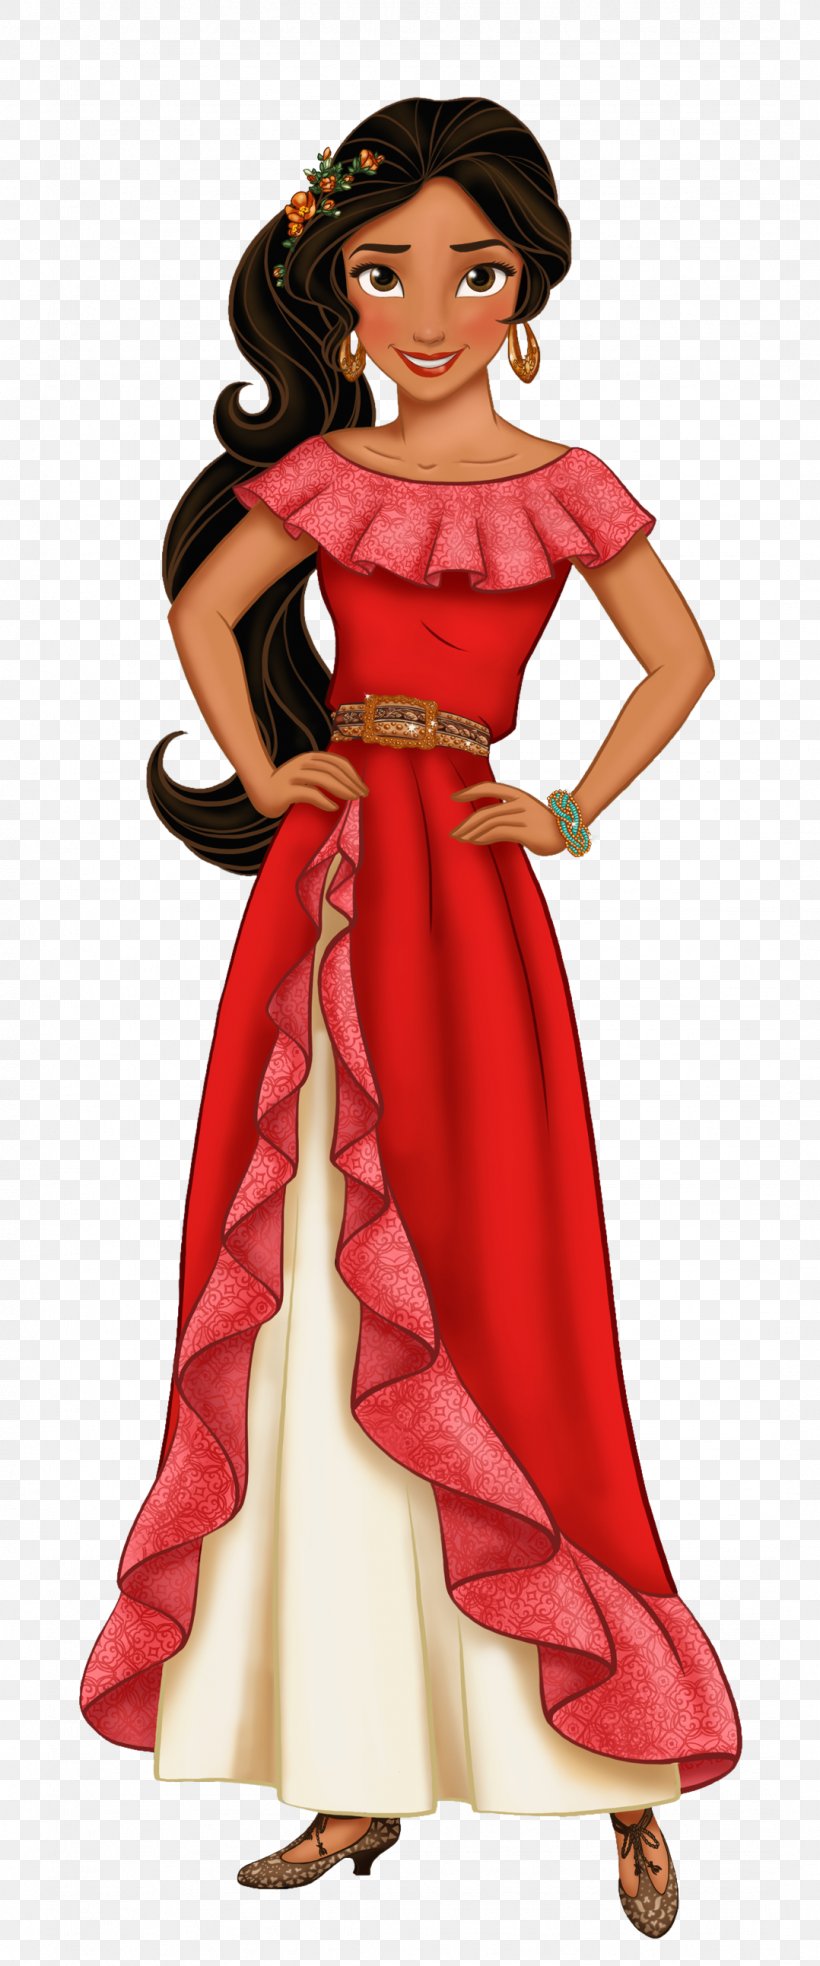 30+ Trends Ideas Disney Princess Red Dress Elena